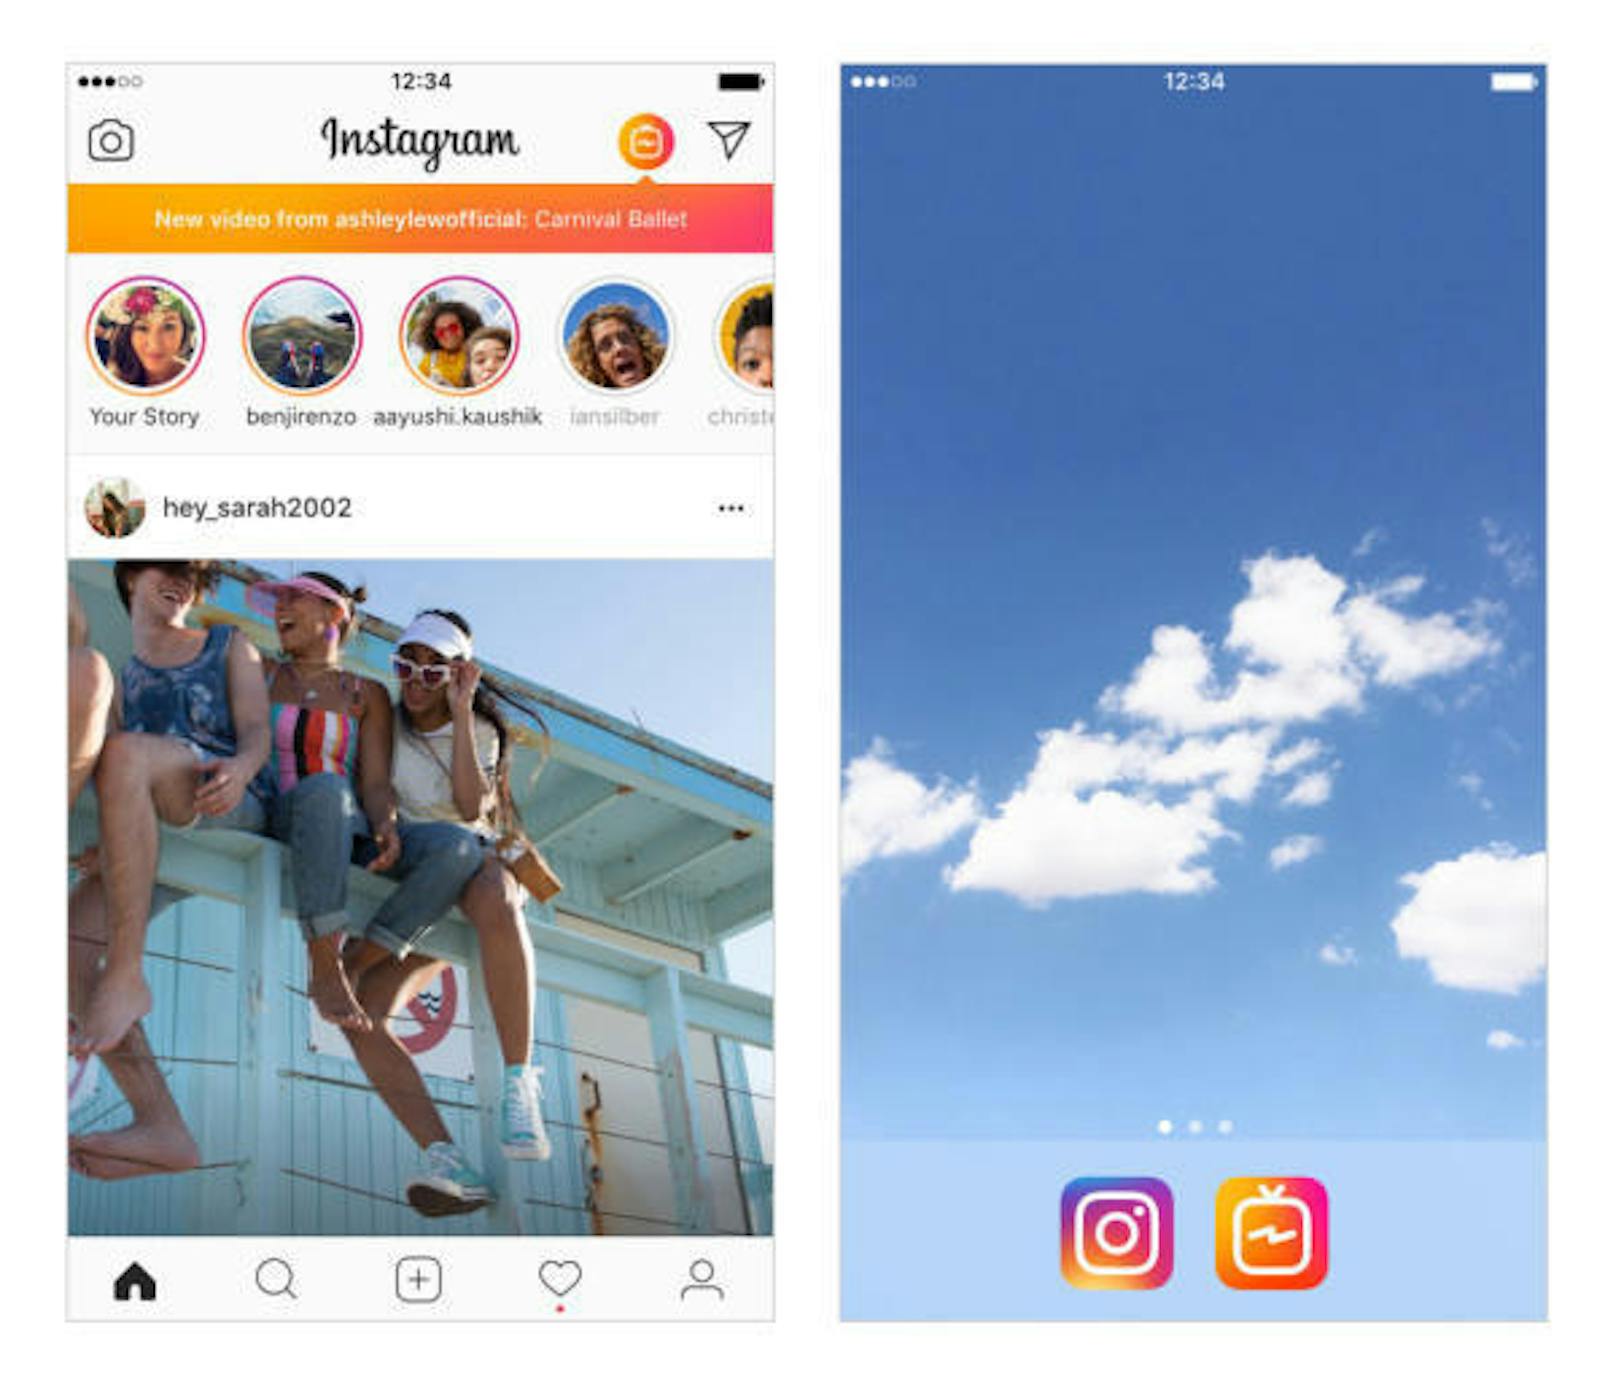 Der Dienst wird auch direkt in die Instagram-App integriert. Über das Fernseh-Symbol oben rechts können Nutzer auf die Ansicht mit den längeren Videos wechseln. Zudem wird angezeigt, wenn neue Inhalte hochgeladen wurden.